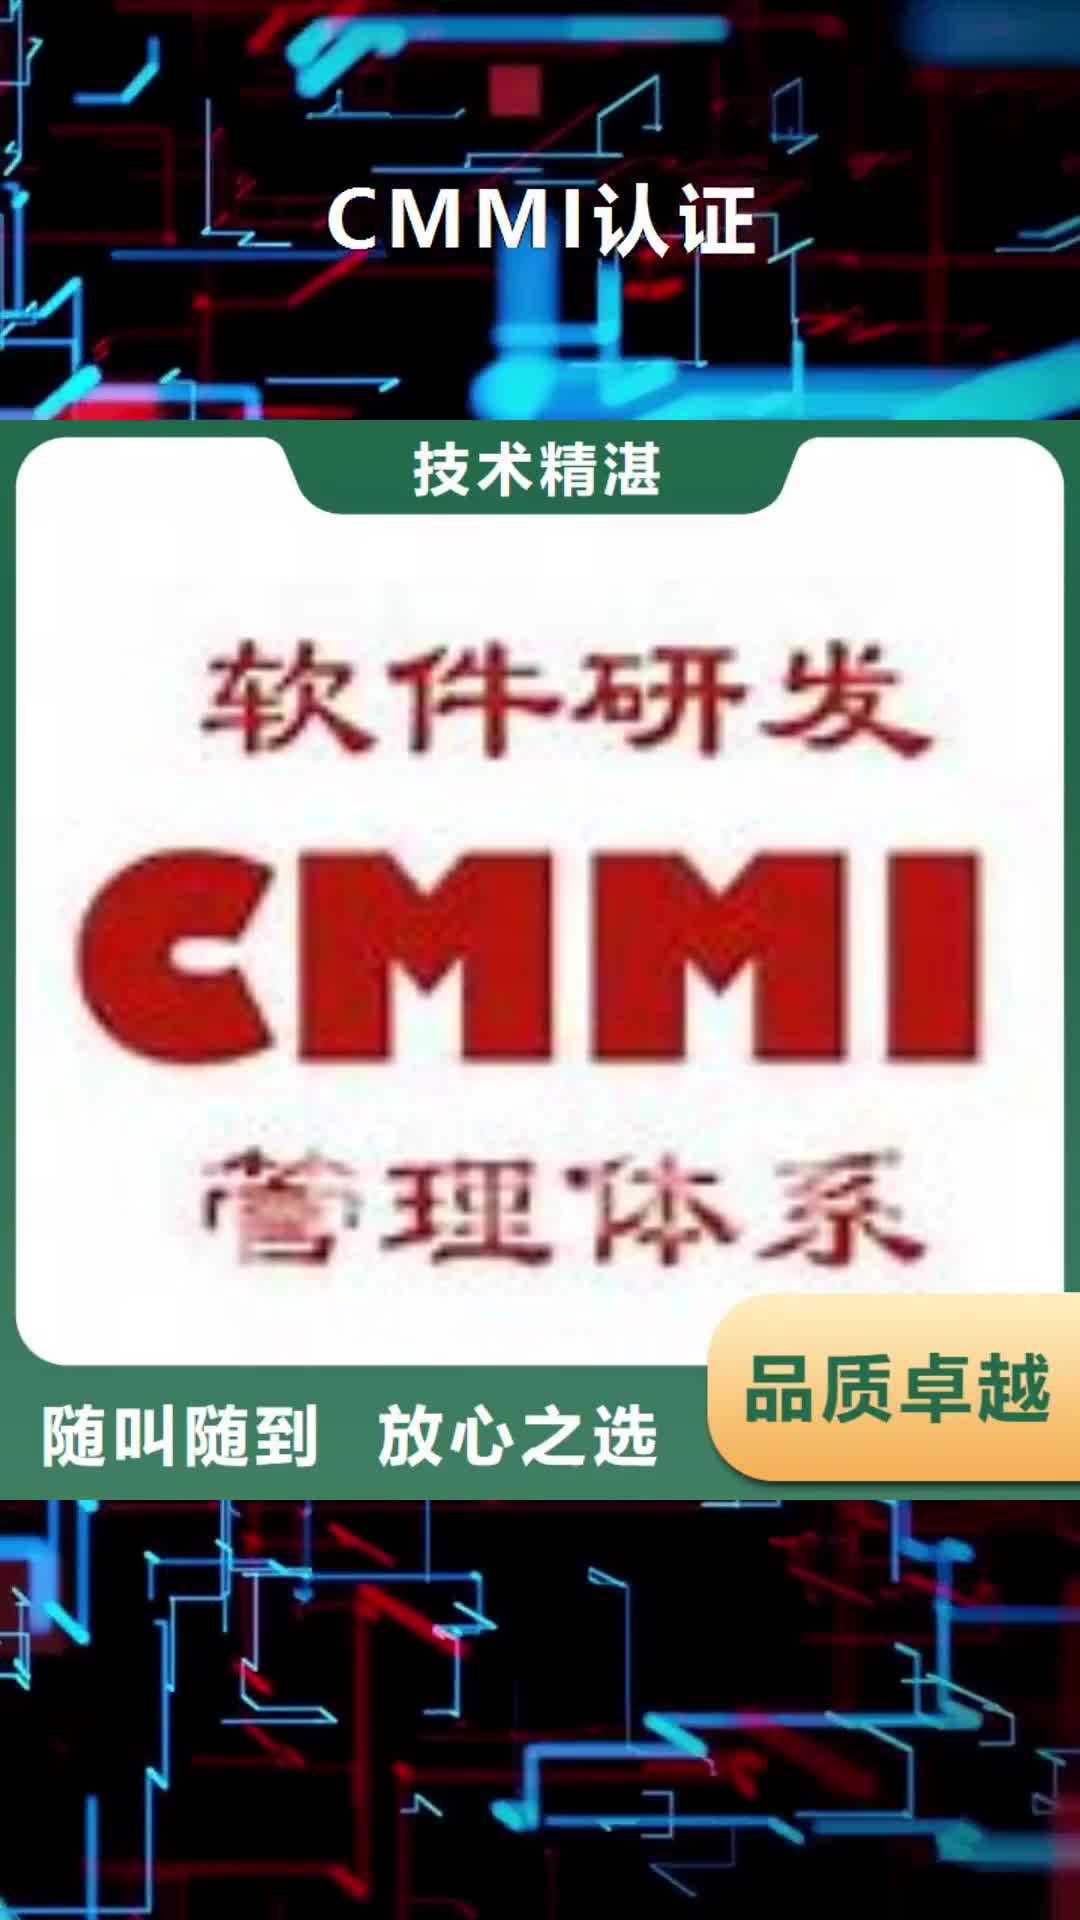 乐山【CMMI认证】-知识产权认证/GB29490一对一服务